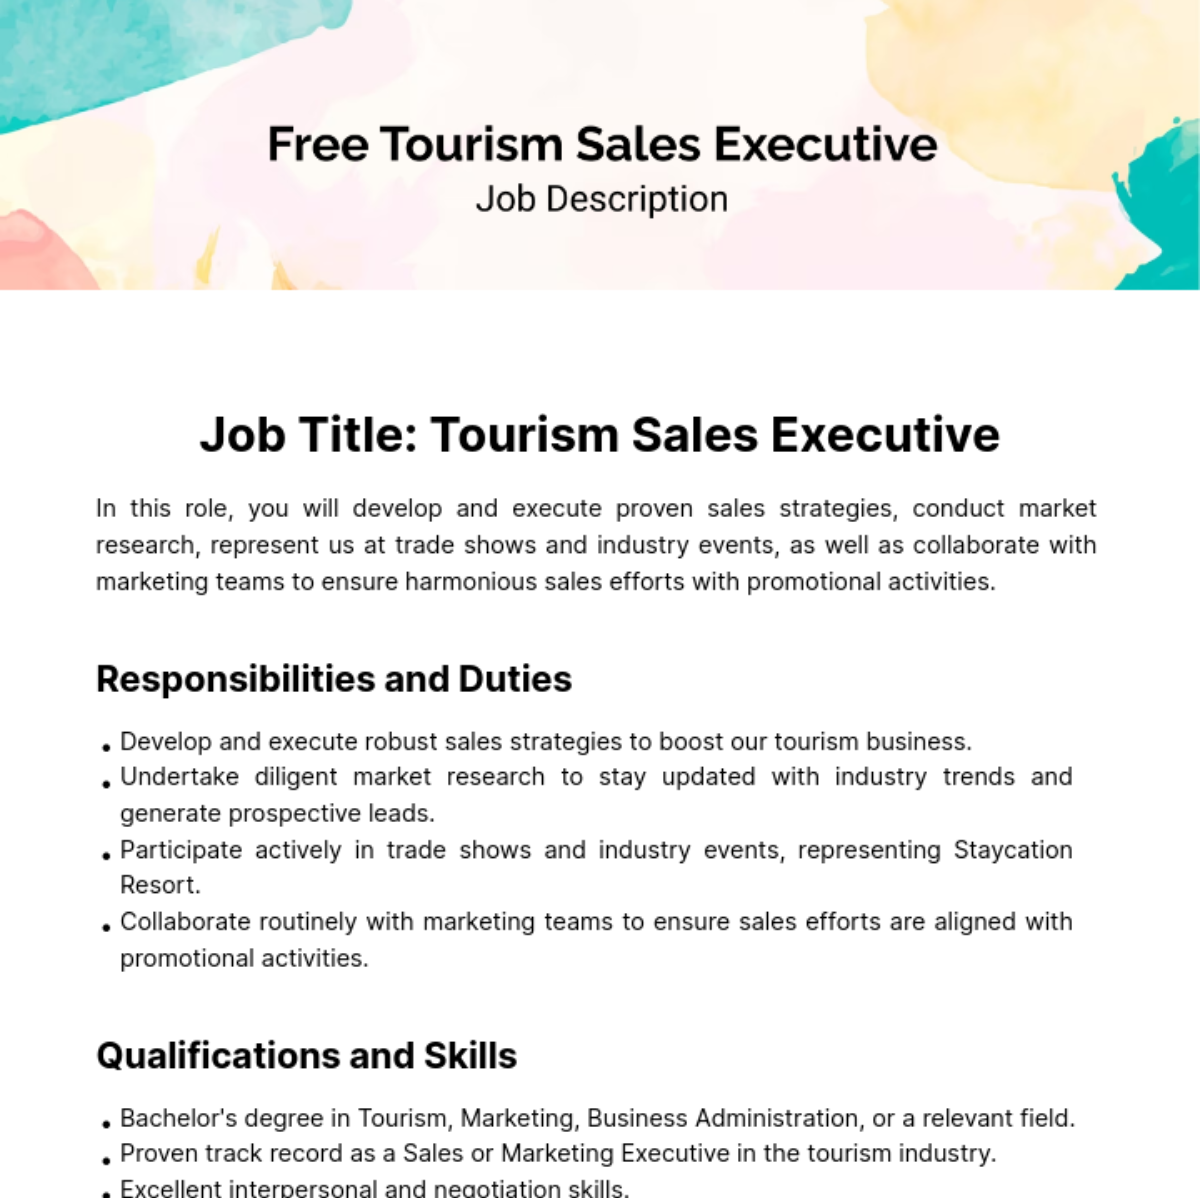 Free Tourism Sales Executive Job Description Template